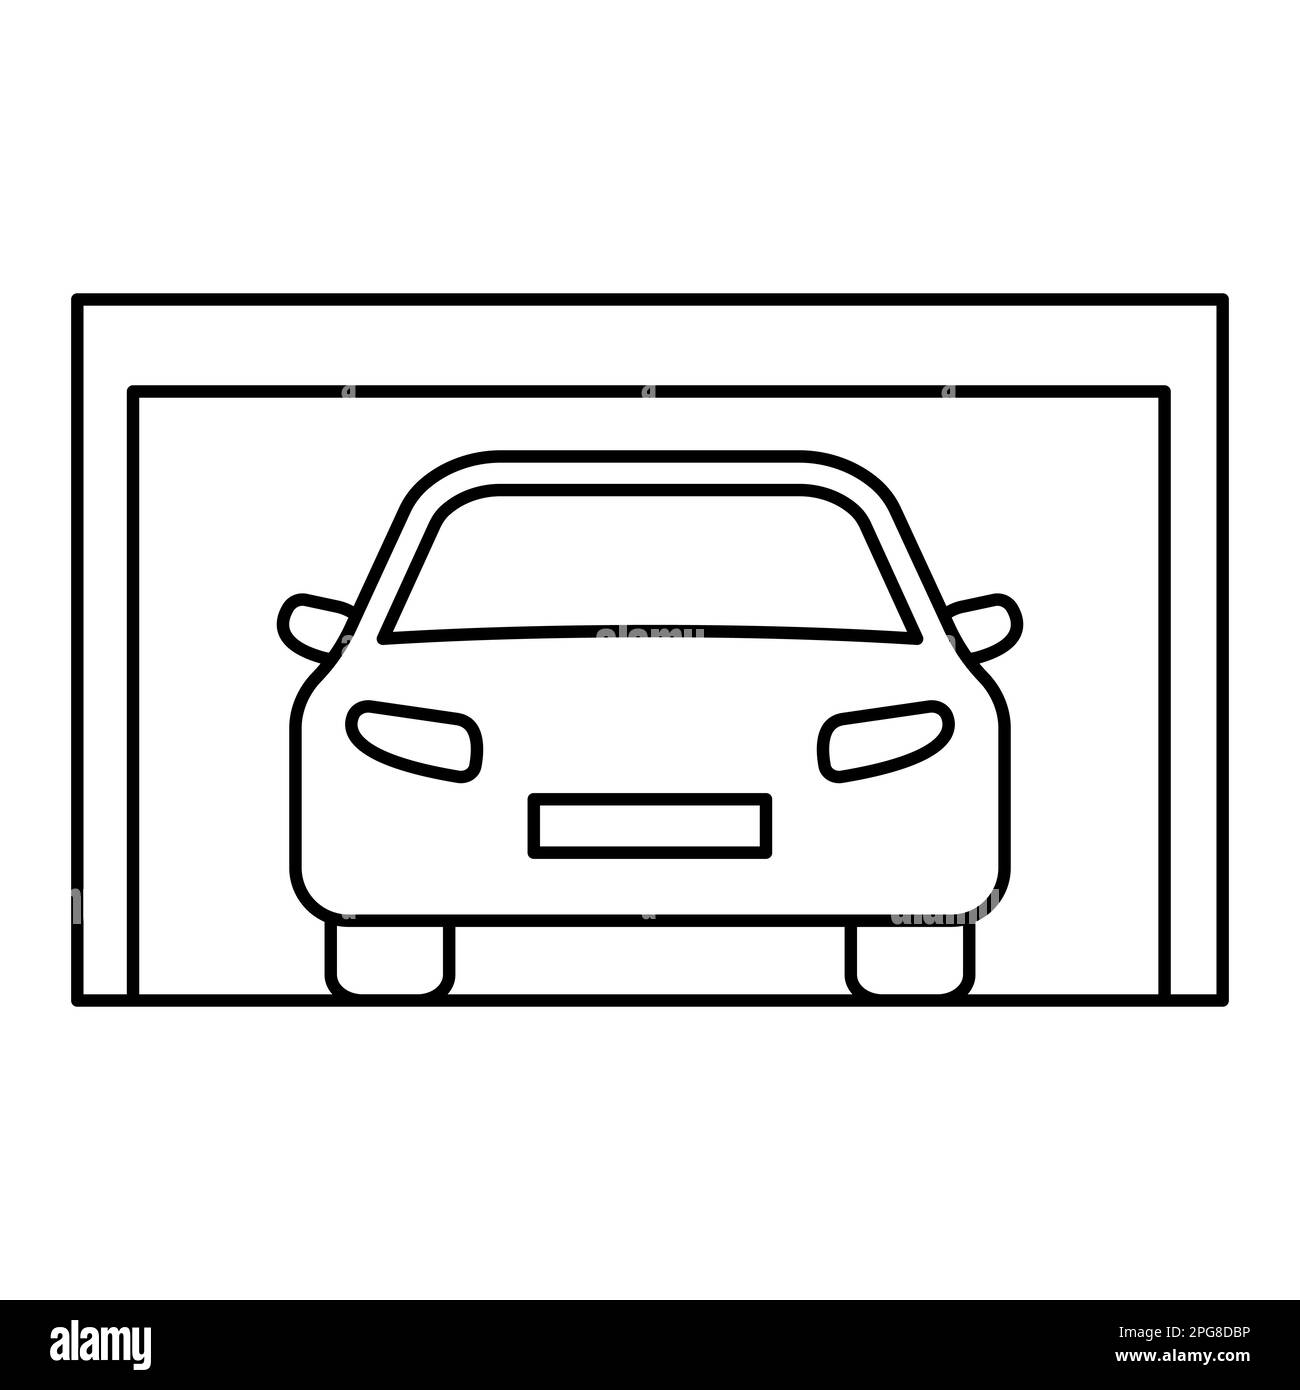 Auto werkstatt interieur Stock-Vektorgrafiken kaufen - Seite 2 - Alamy